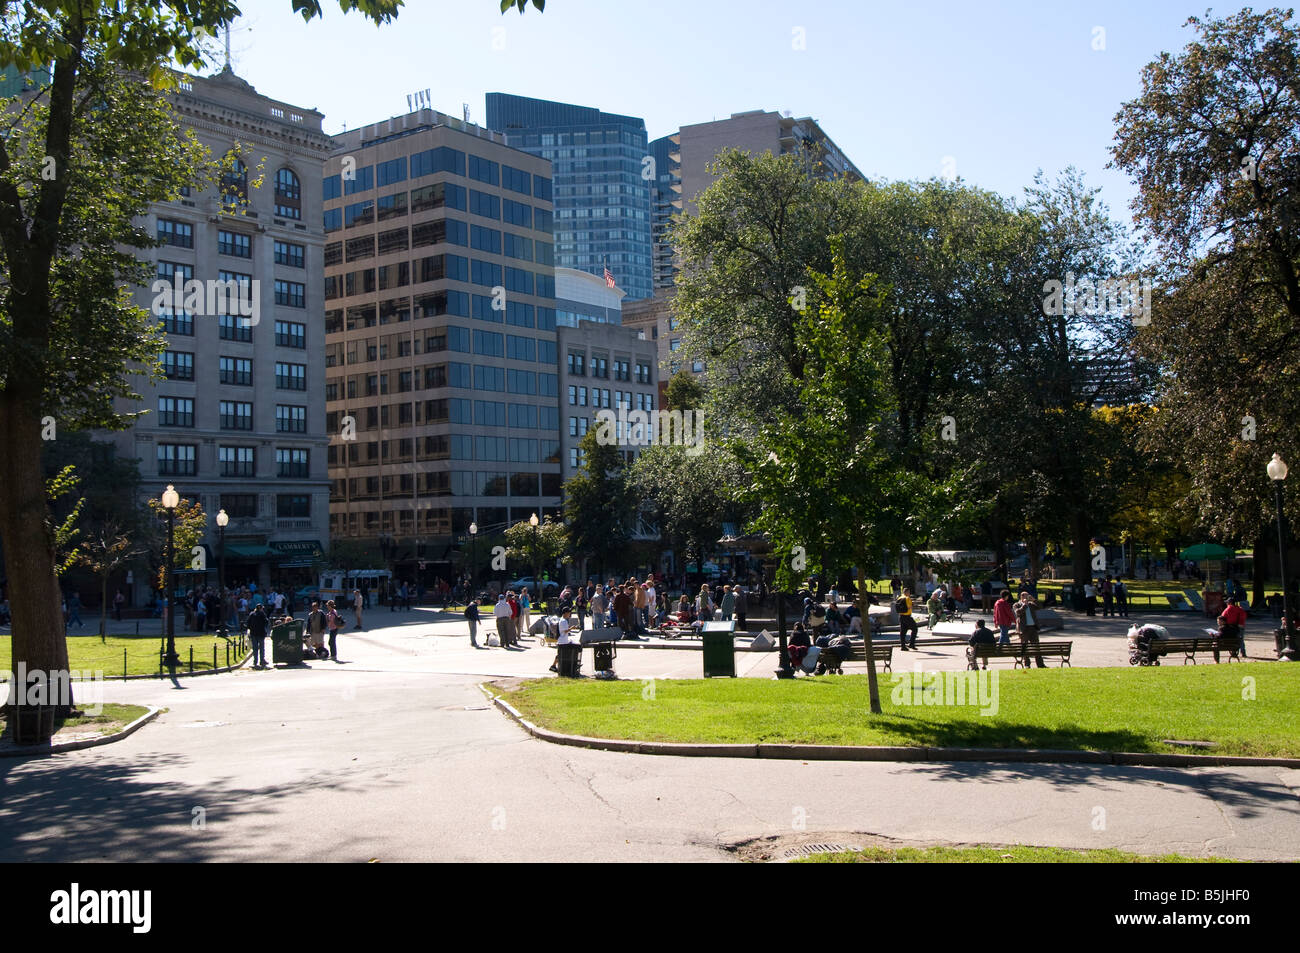 A sunny Saturday at the park - Boston Common, Boston USA Stock Photo